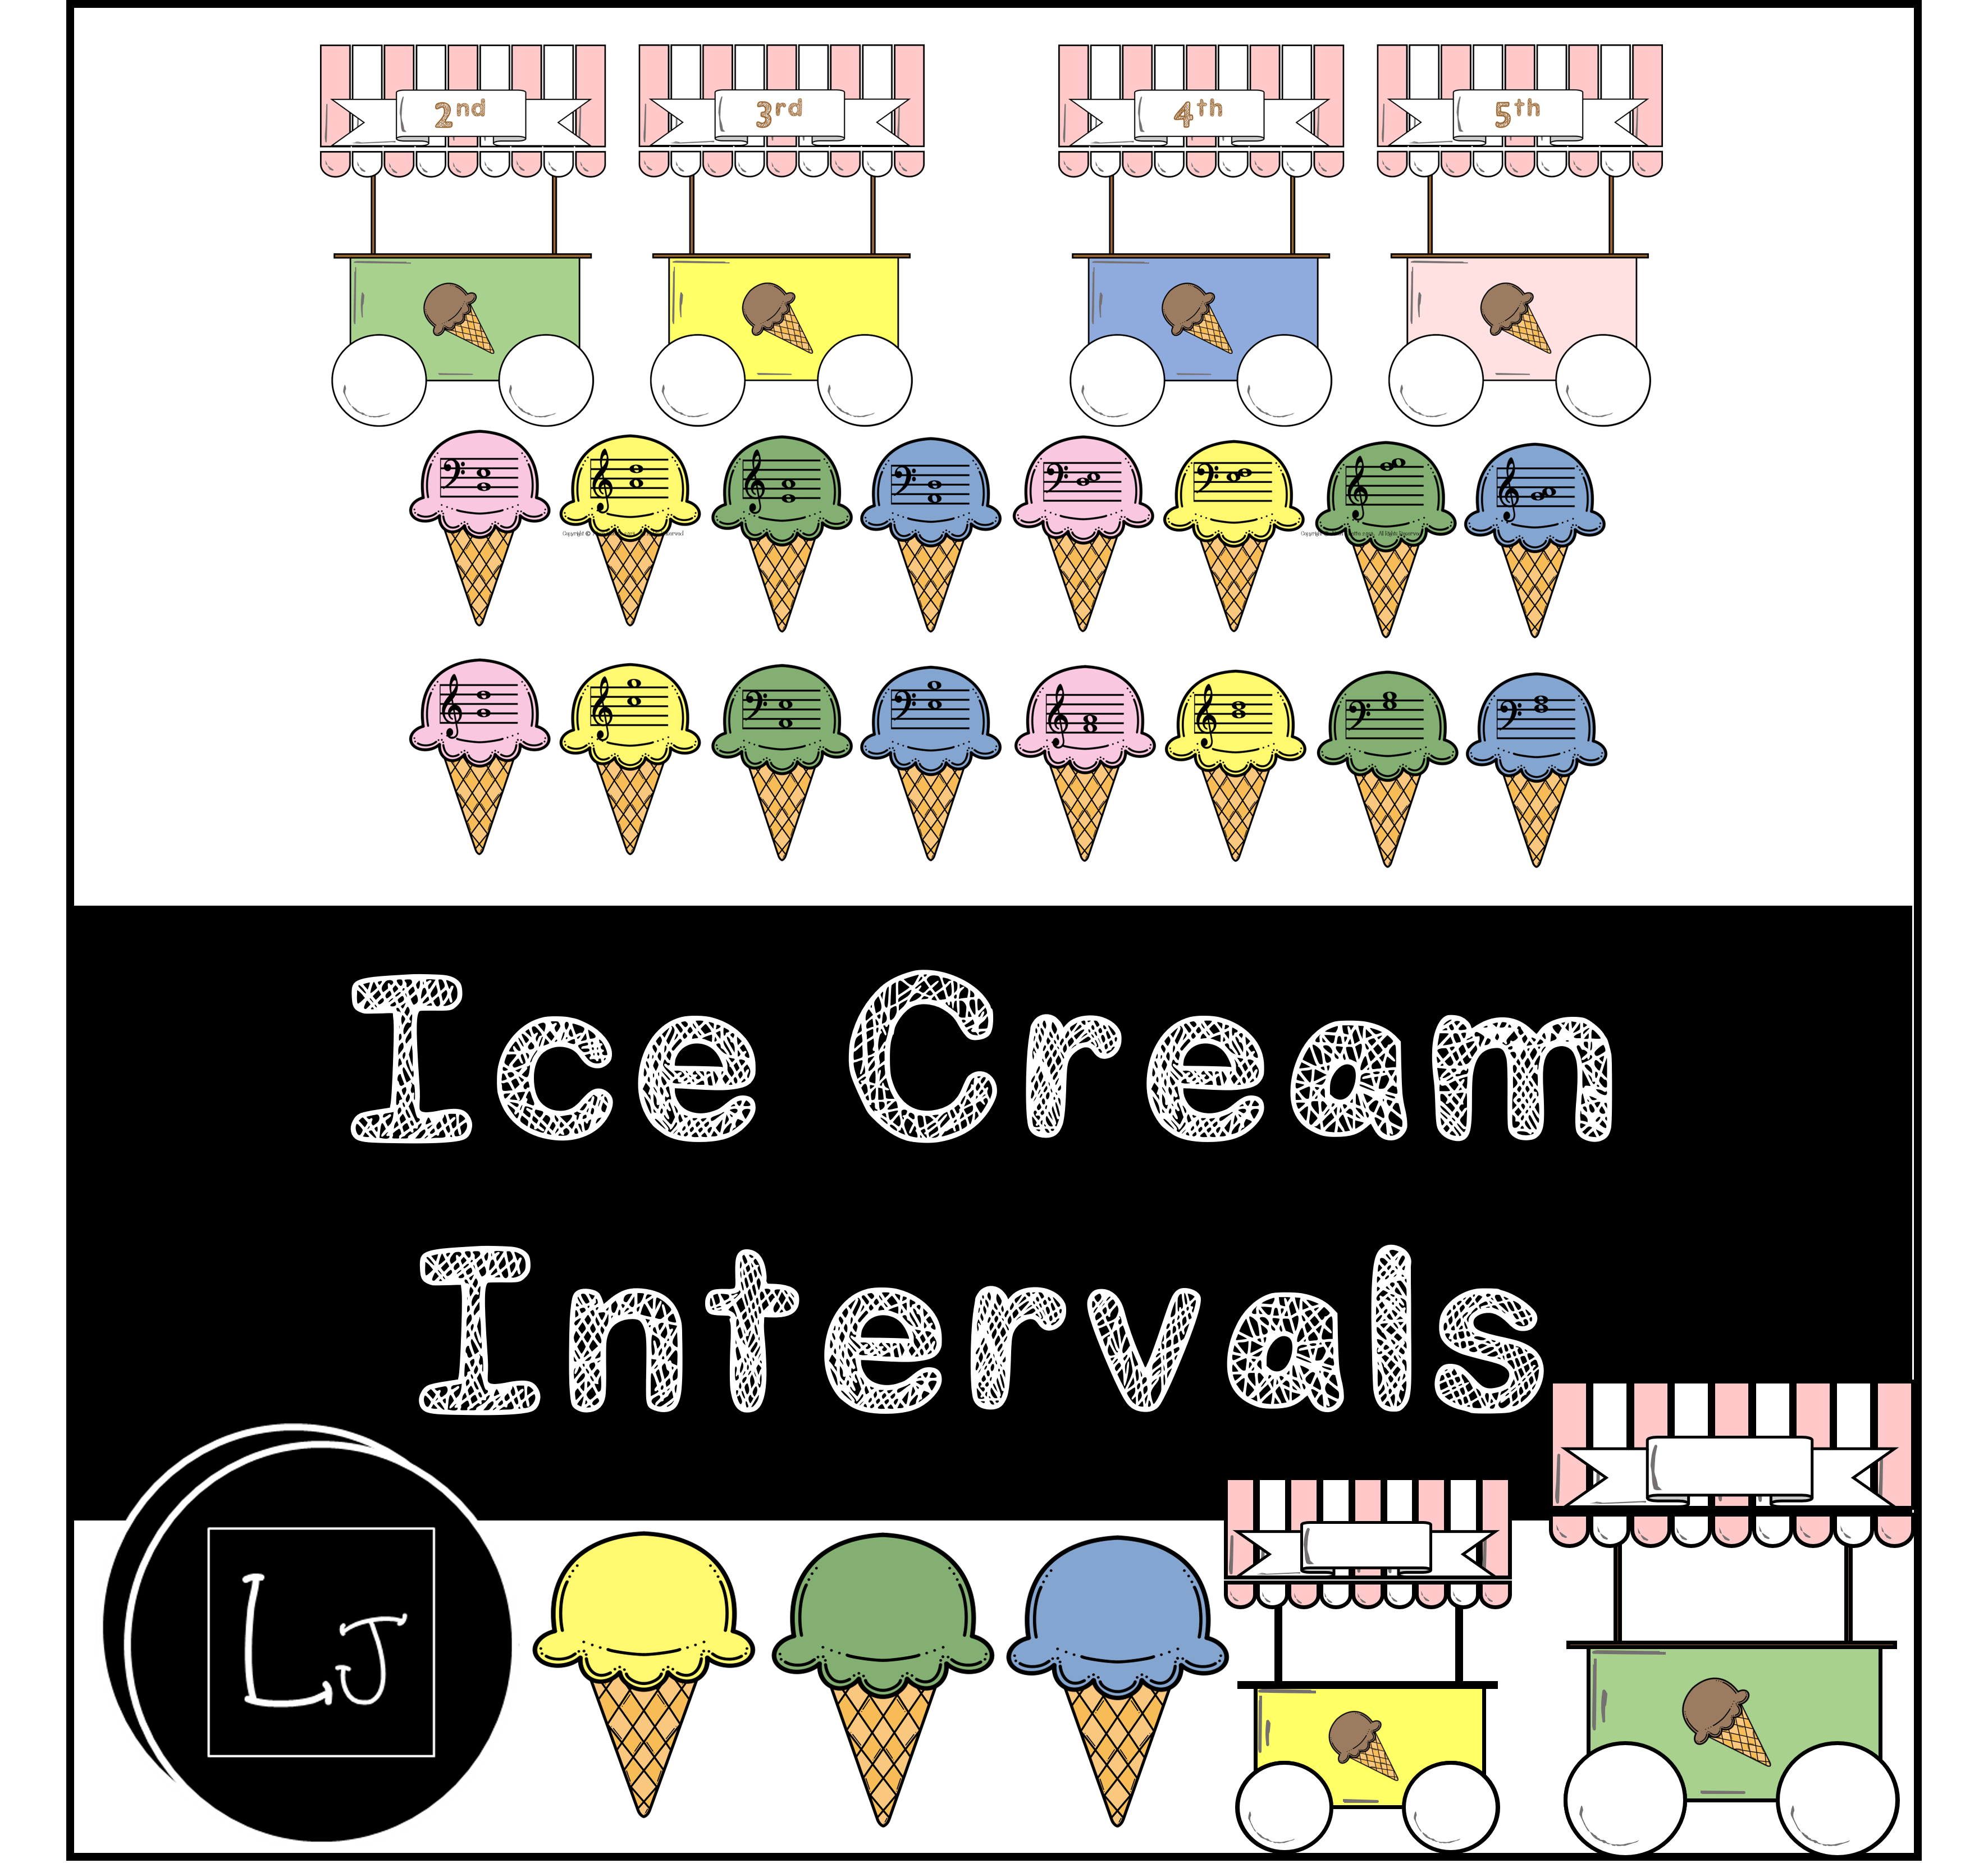 Ice Cream intervals cover